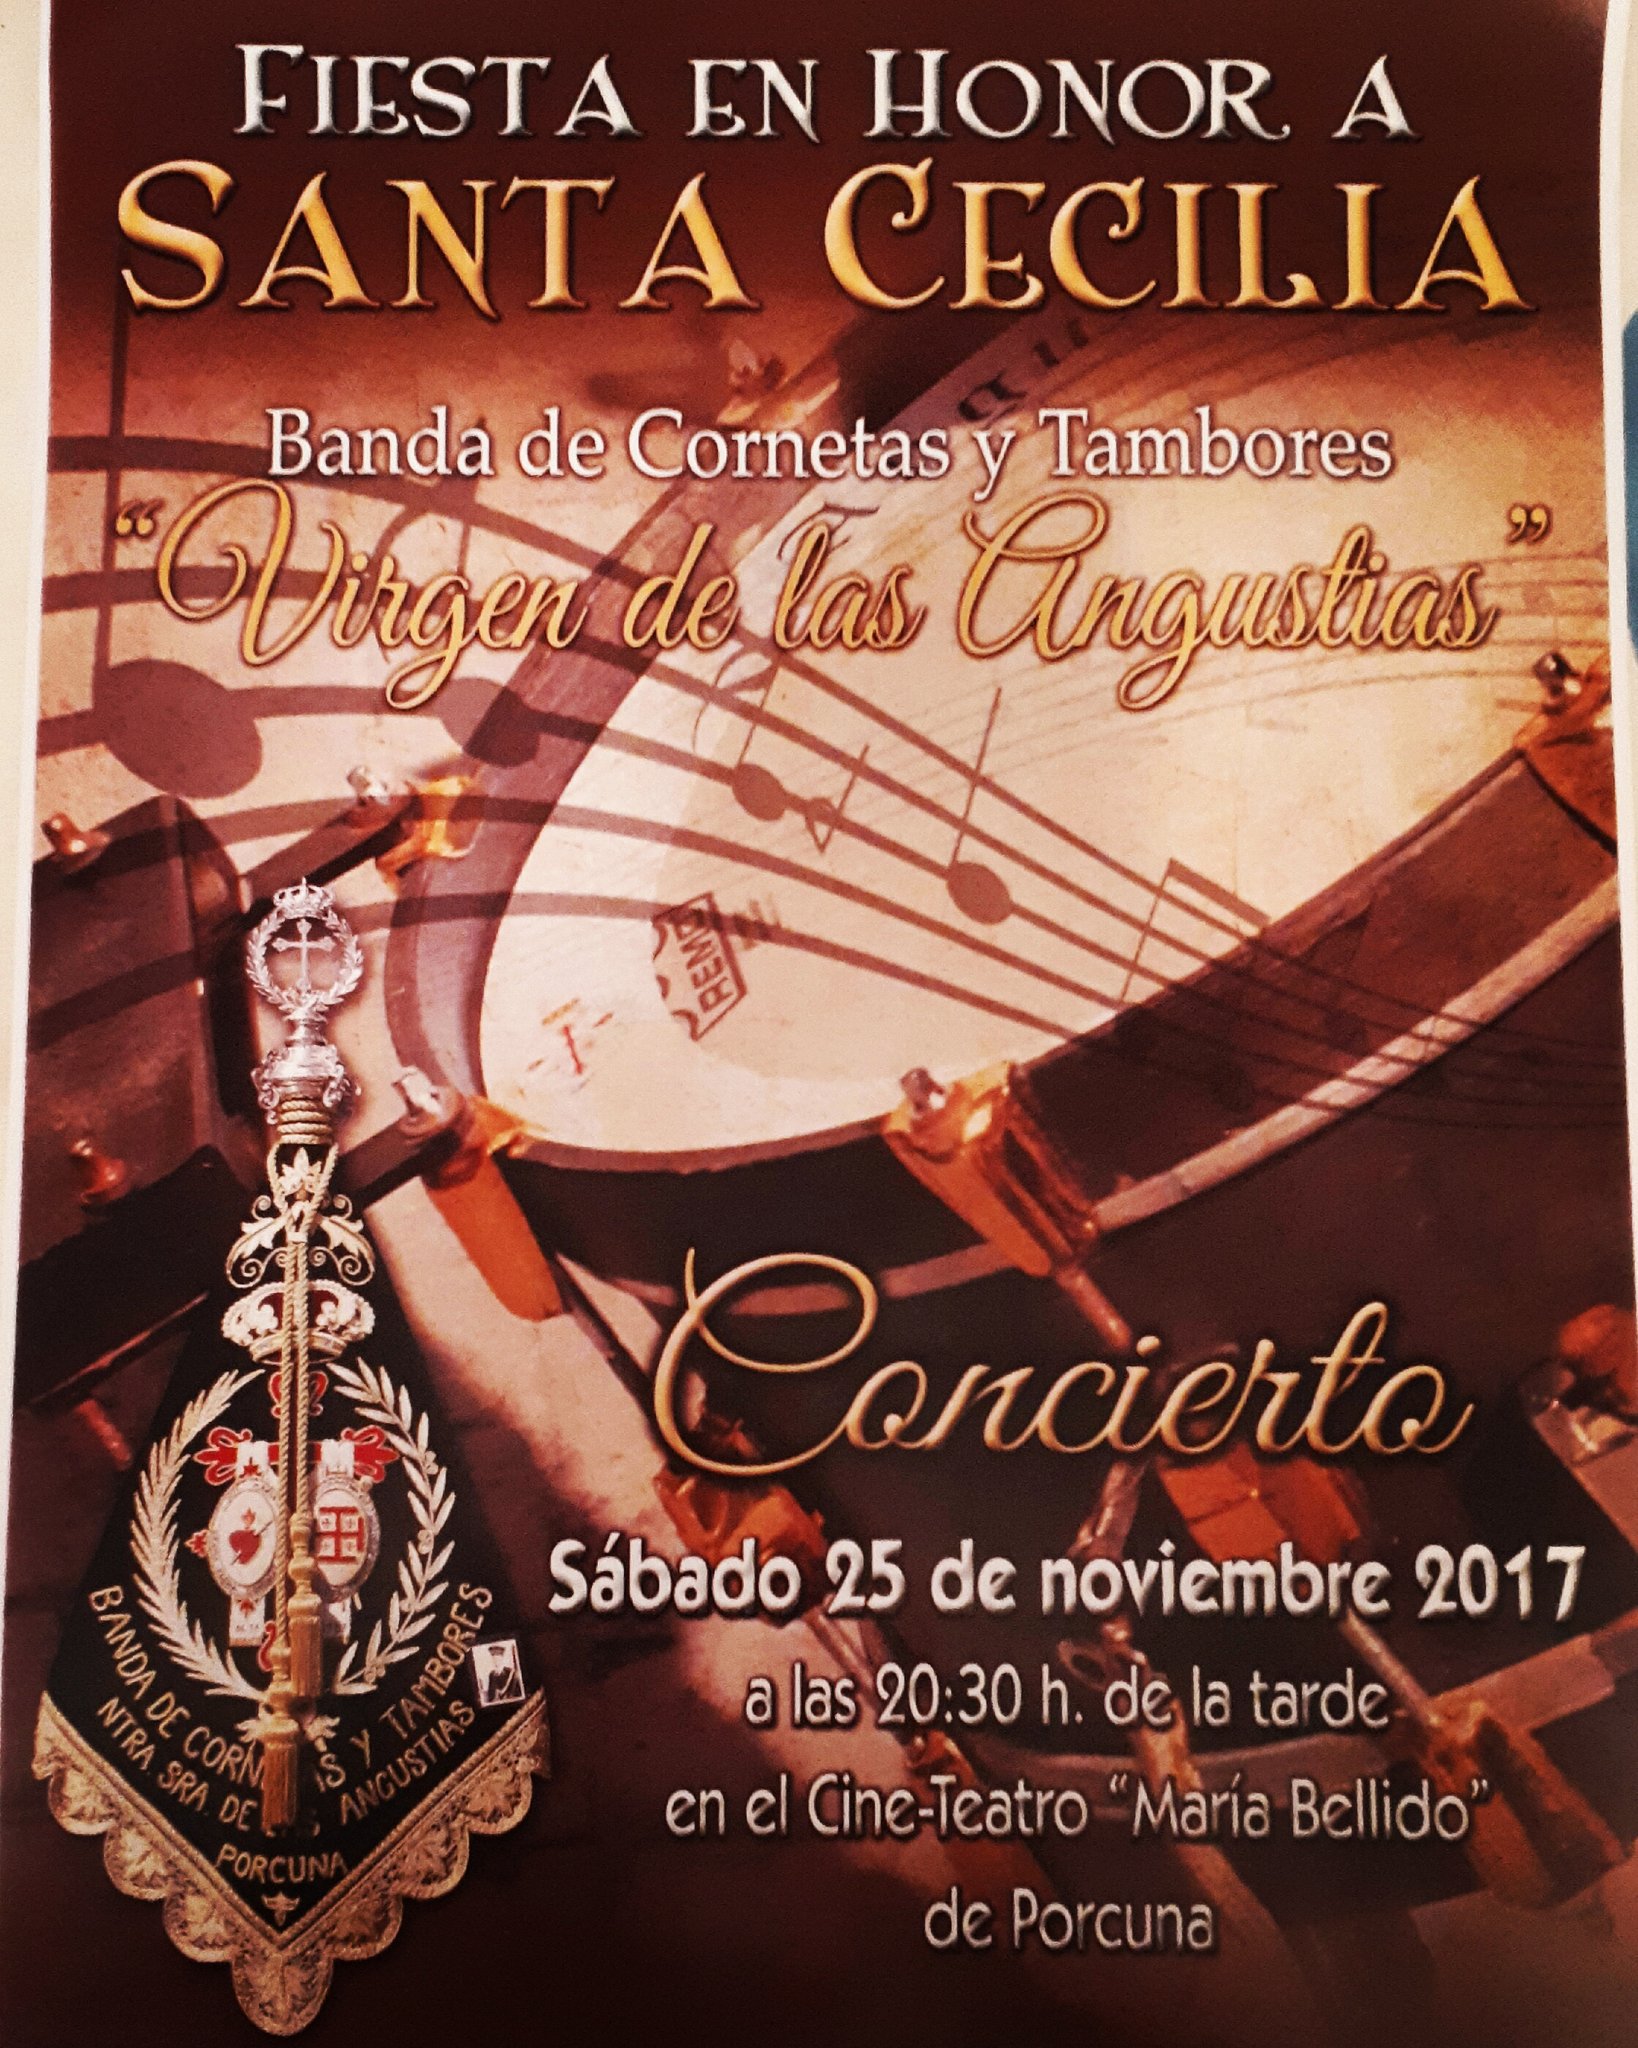 Fiesta en honor a Santa Cecilia